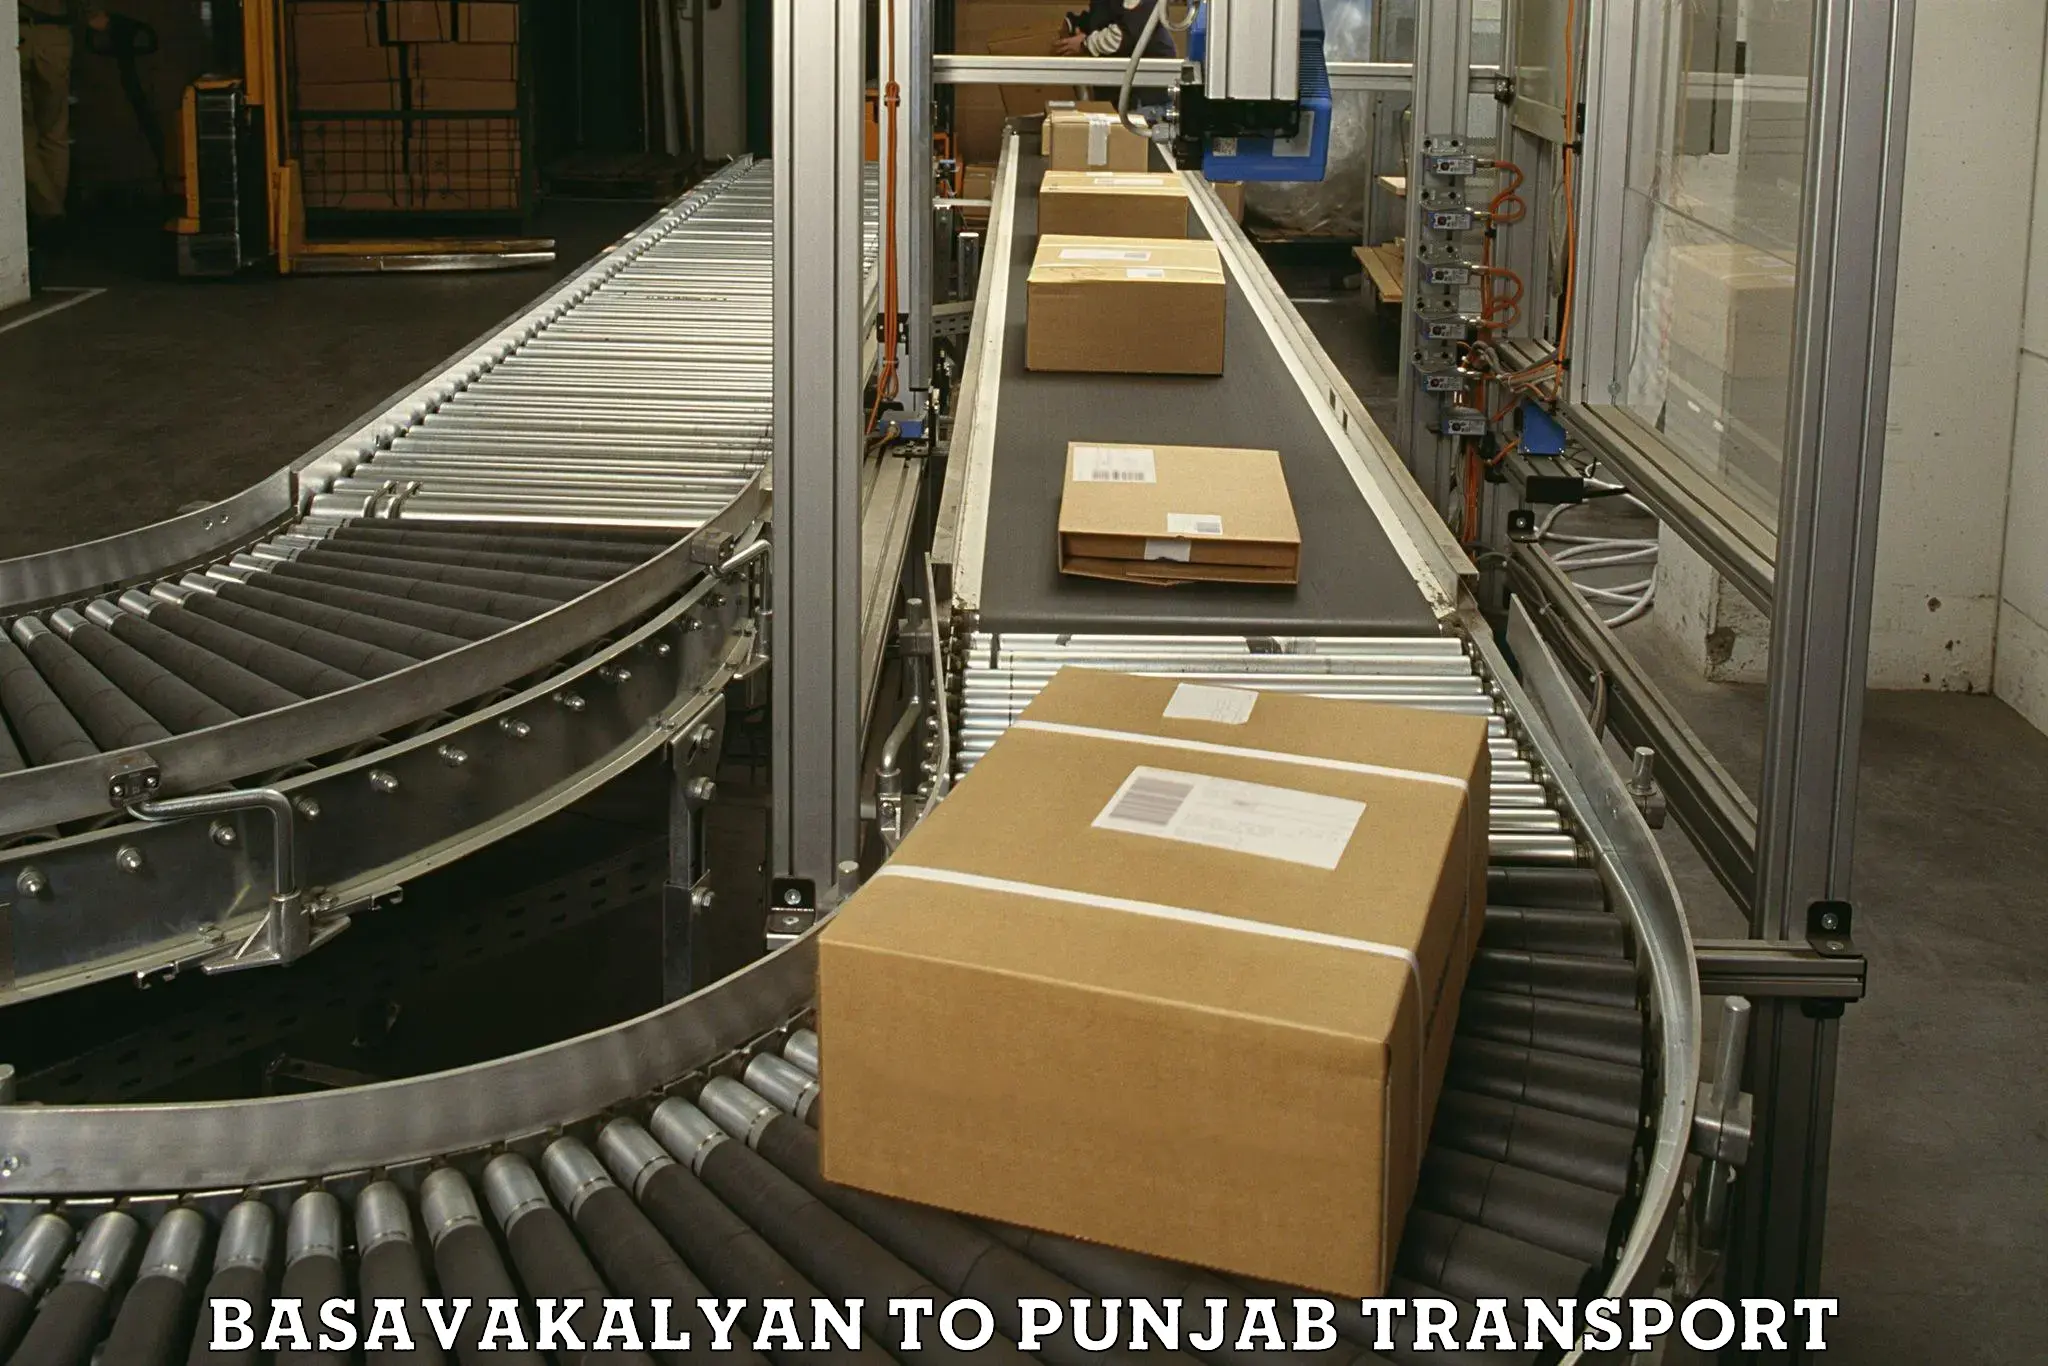 Delivery service Basavakalyan to Punjab